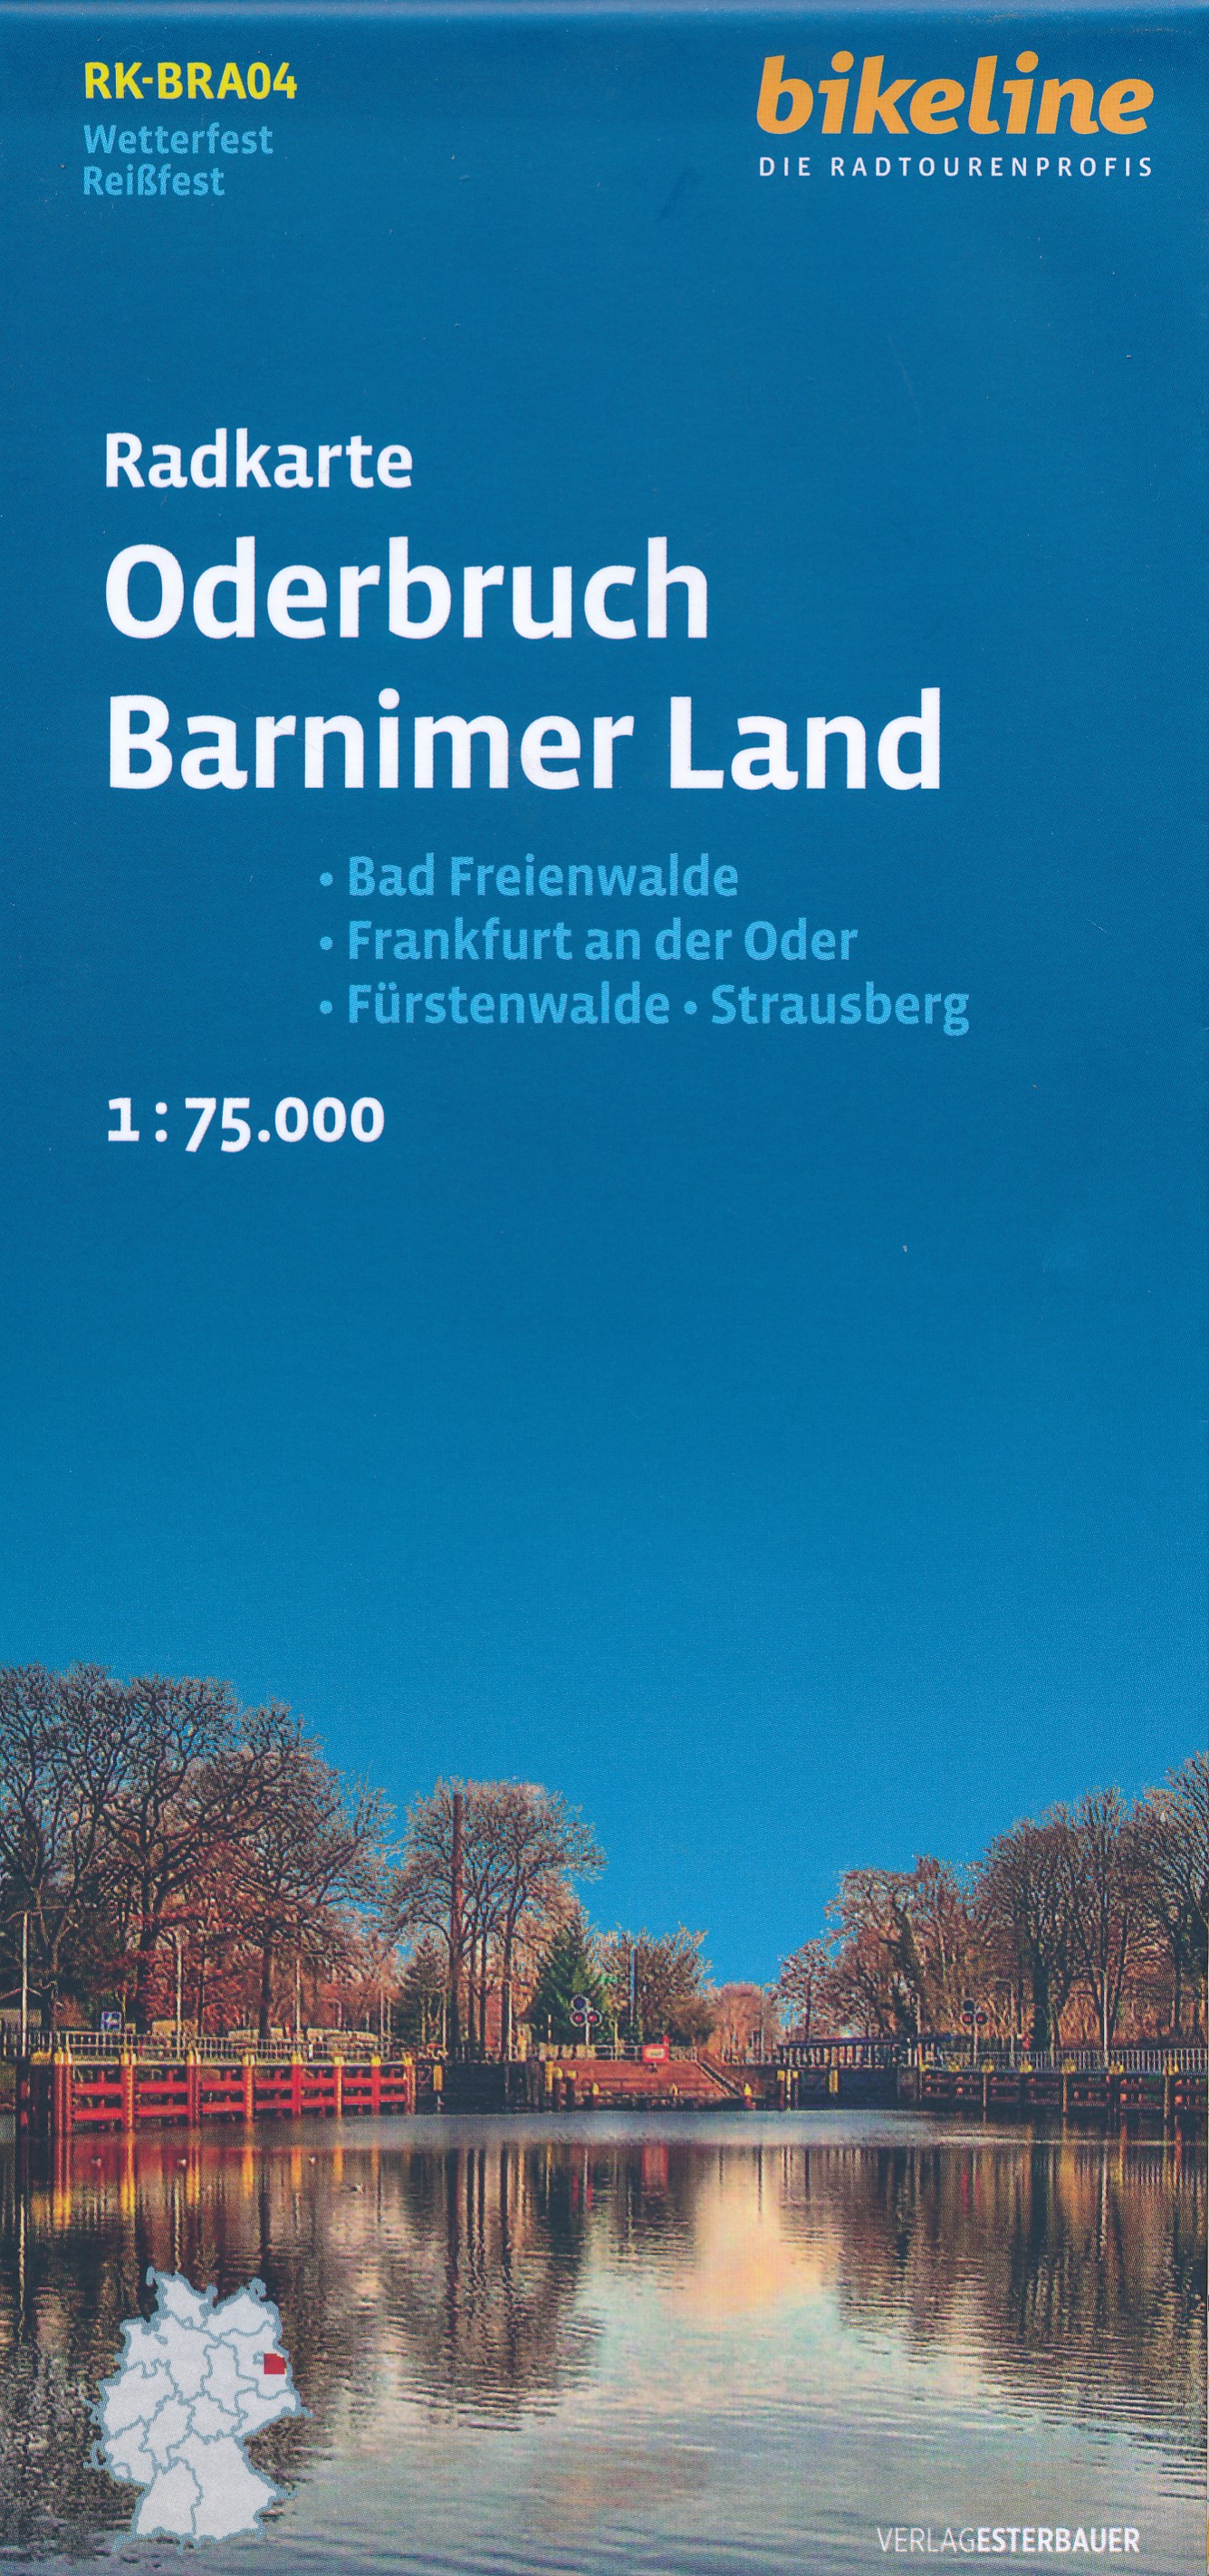 Online bestellen: Fietskaart BRA04 Bikeline Radkarte Oderbruch - Barnimer Land | Esterbauer